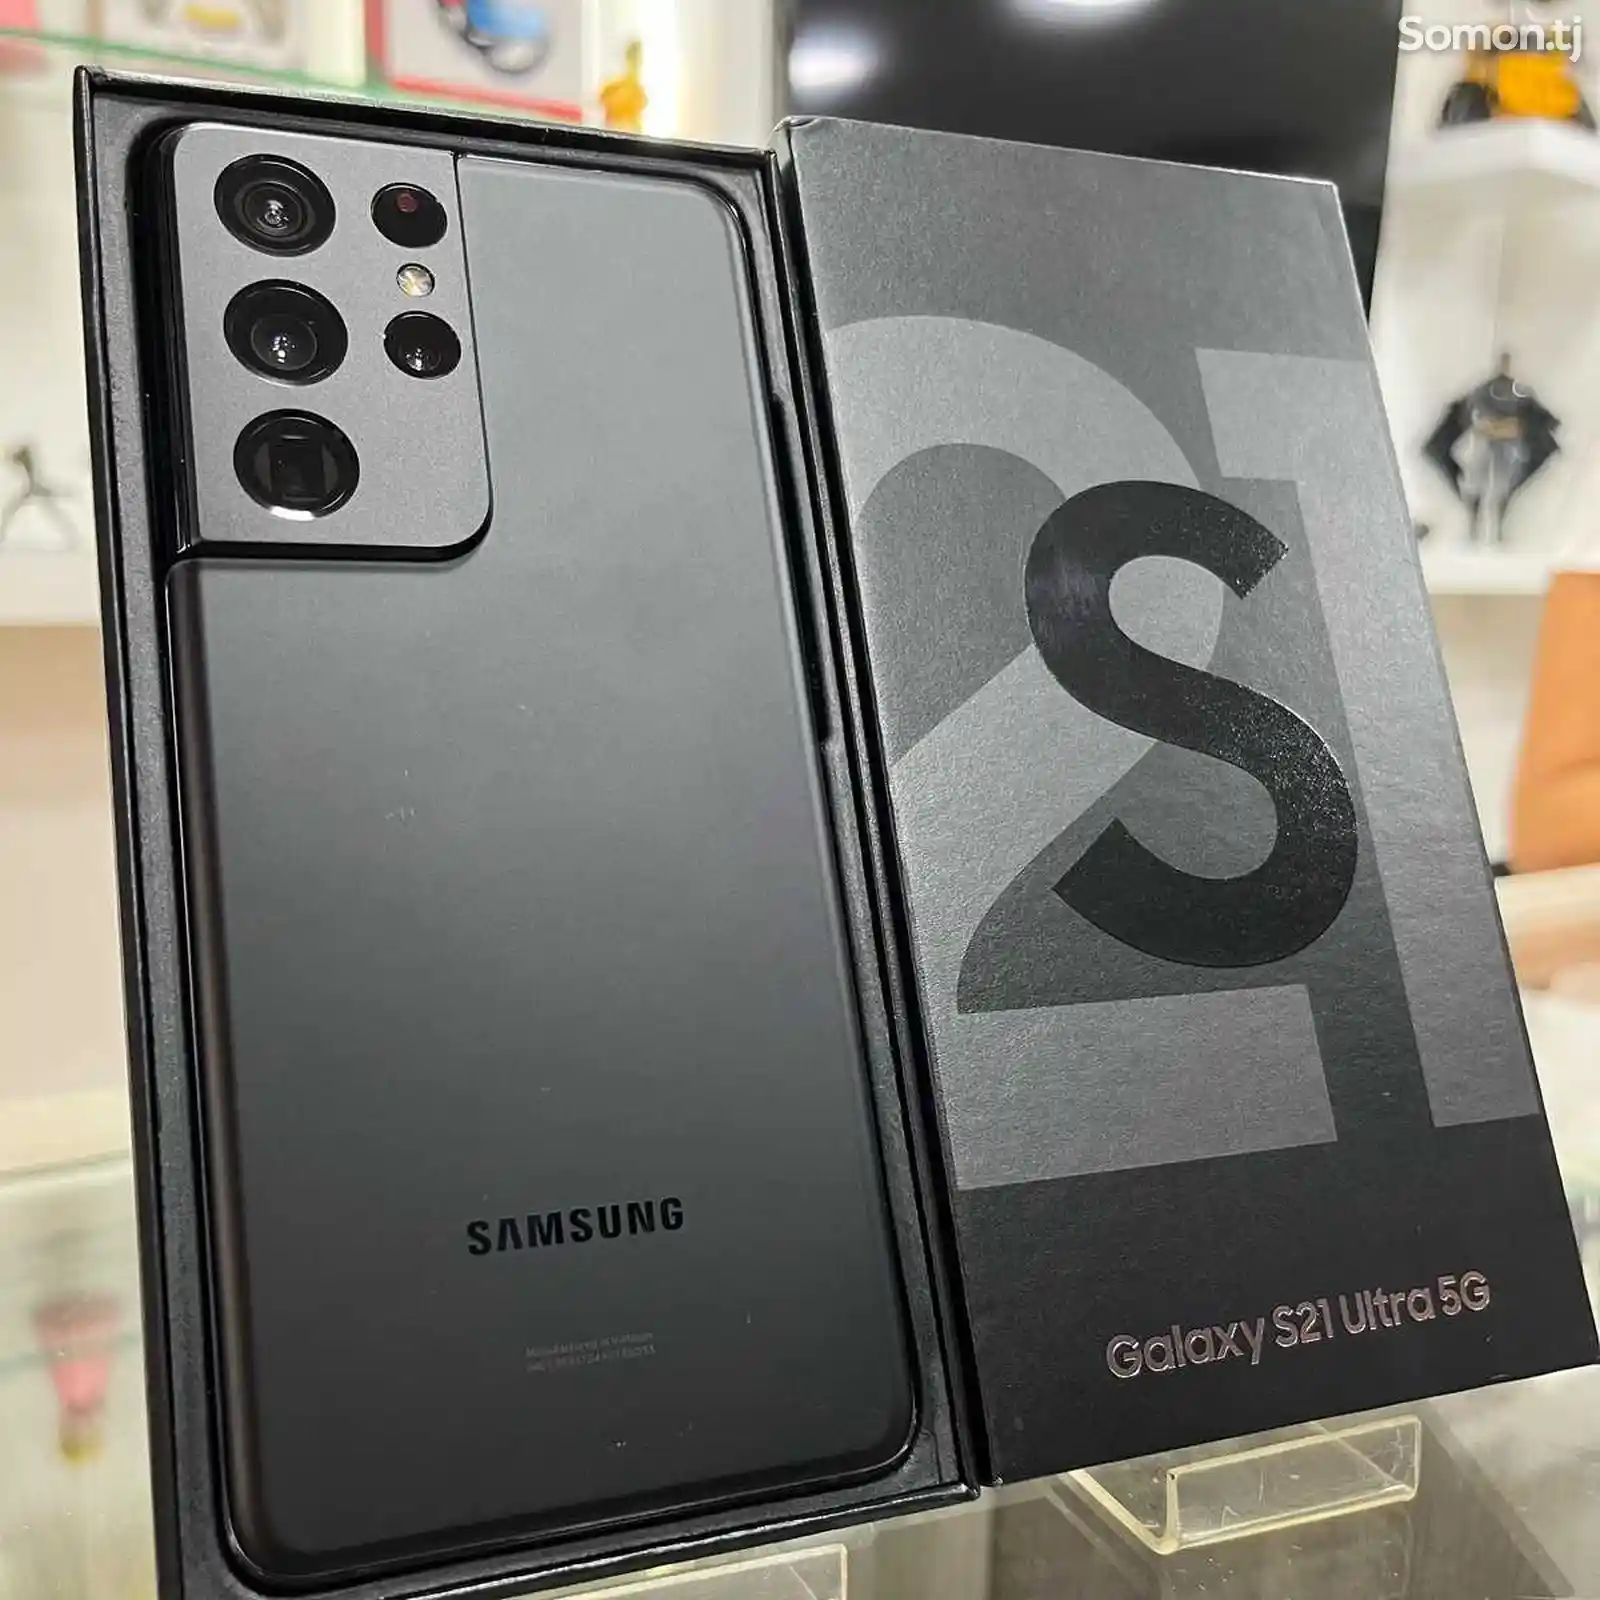 Samsung Galaxy S21 ultra 512 gb